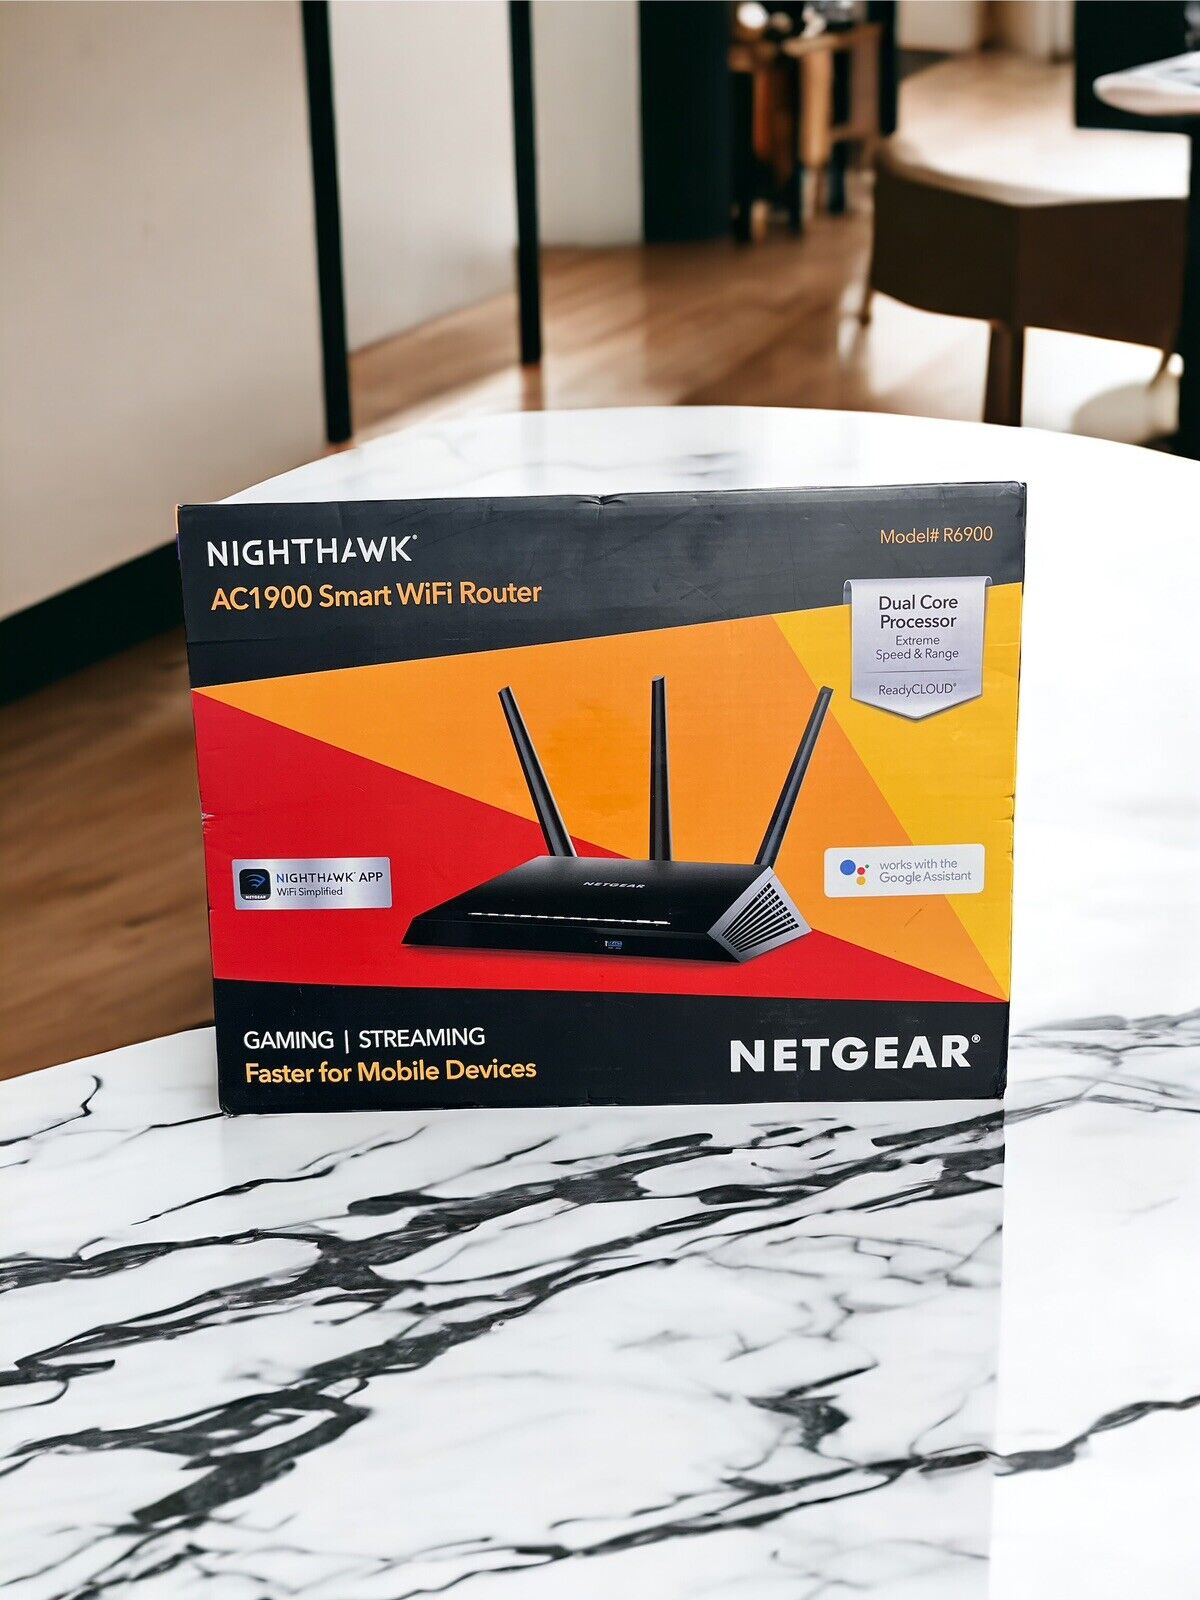 NETGEAR R6900  Nighthawk AC1900 Smart WiFi Router New in Open Box